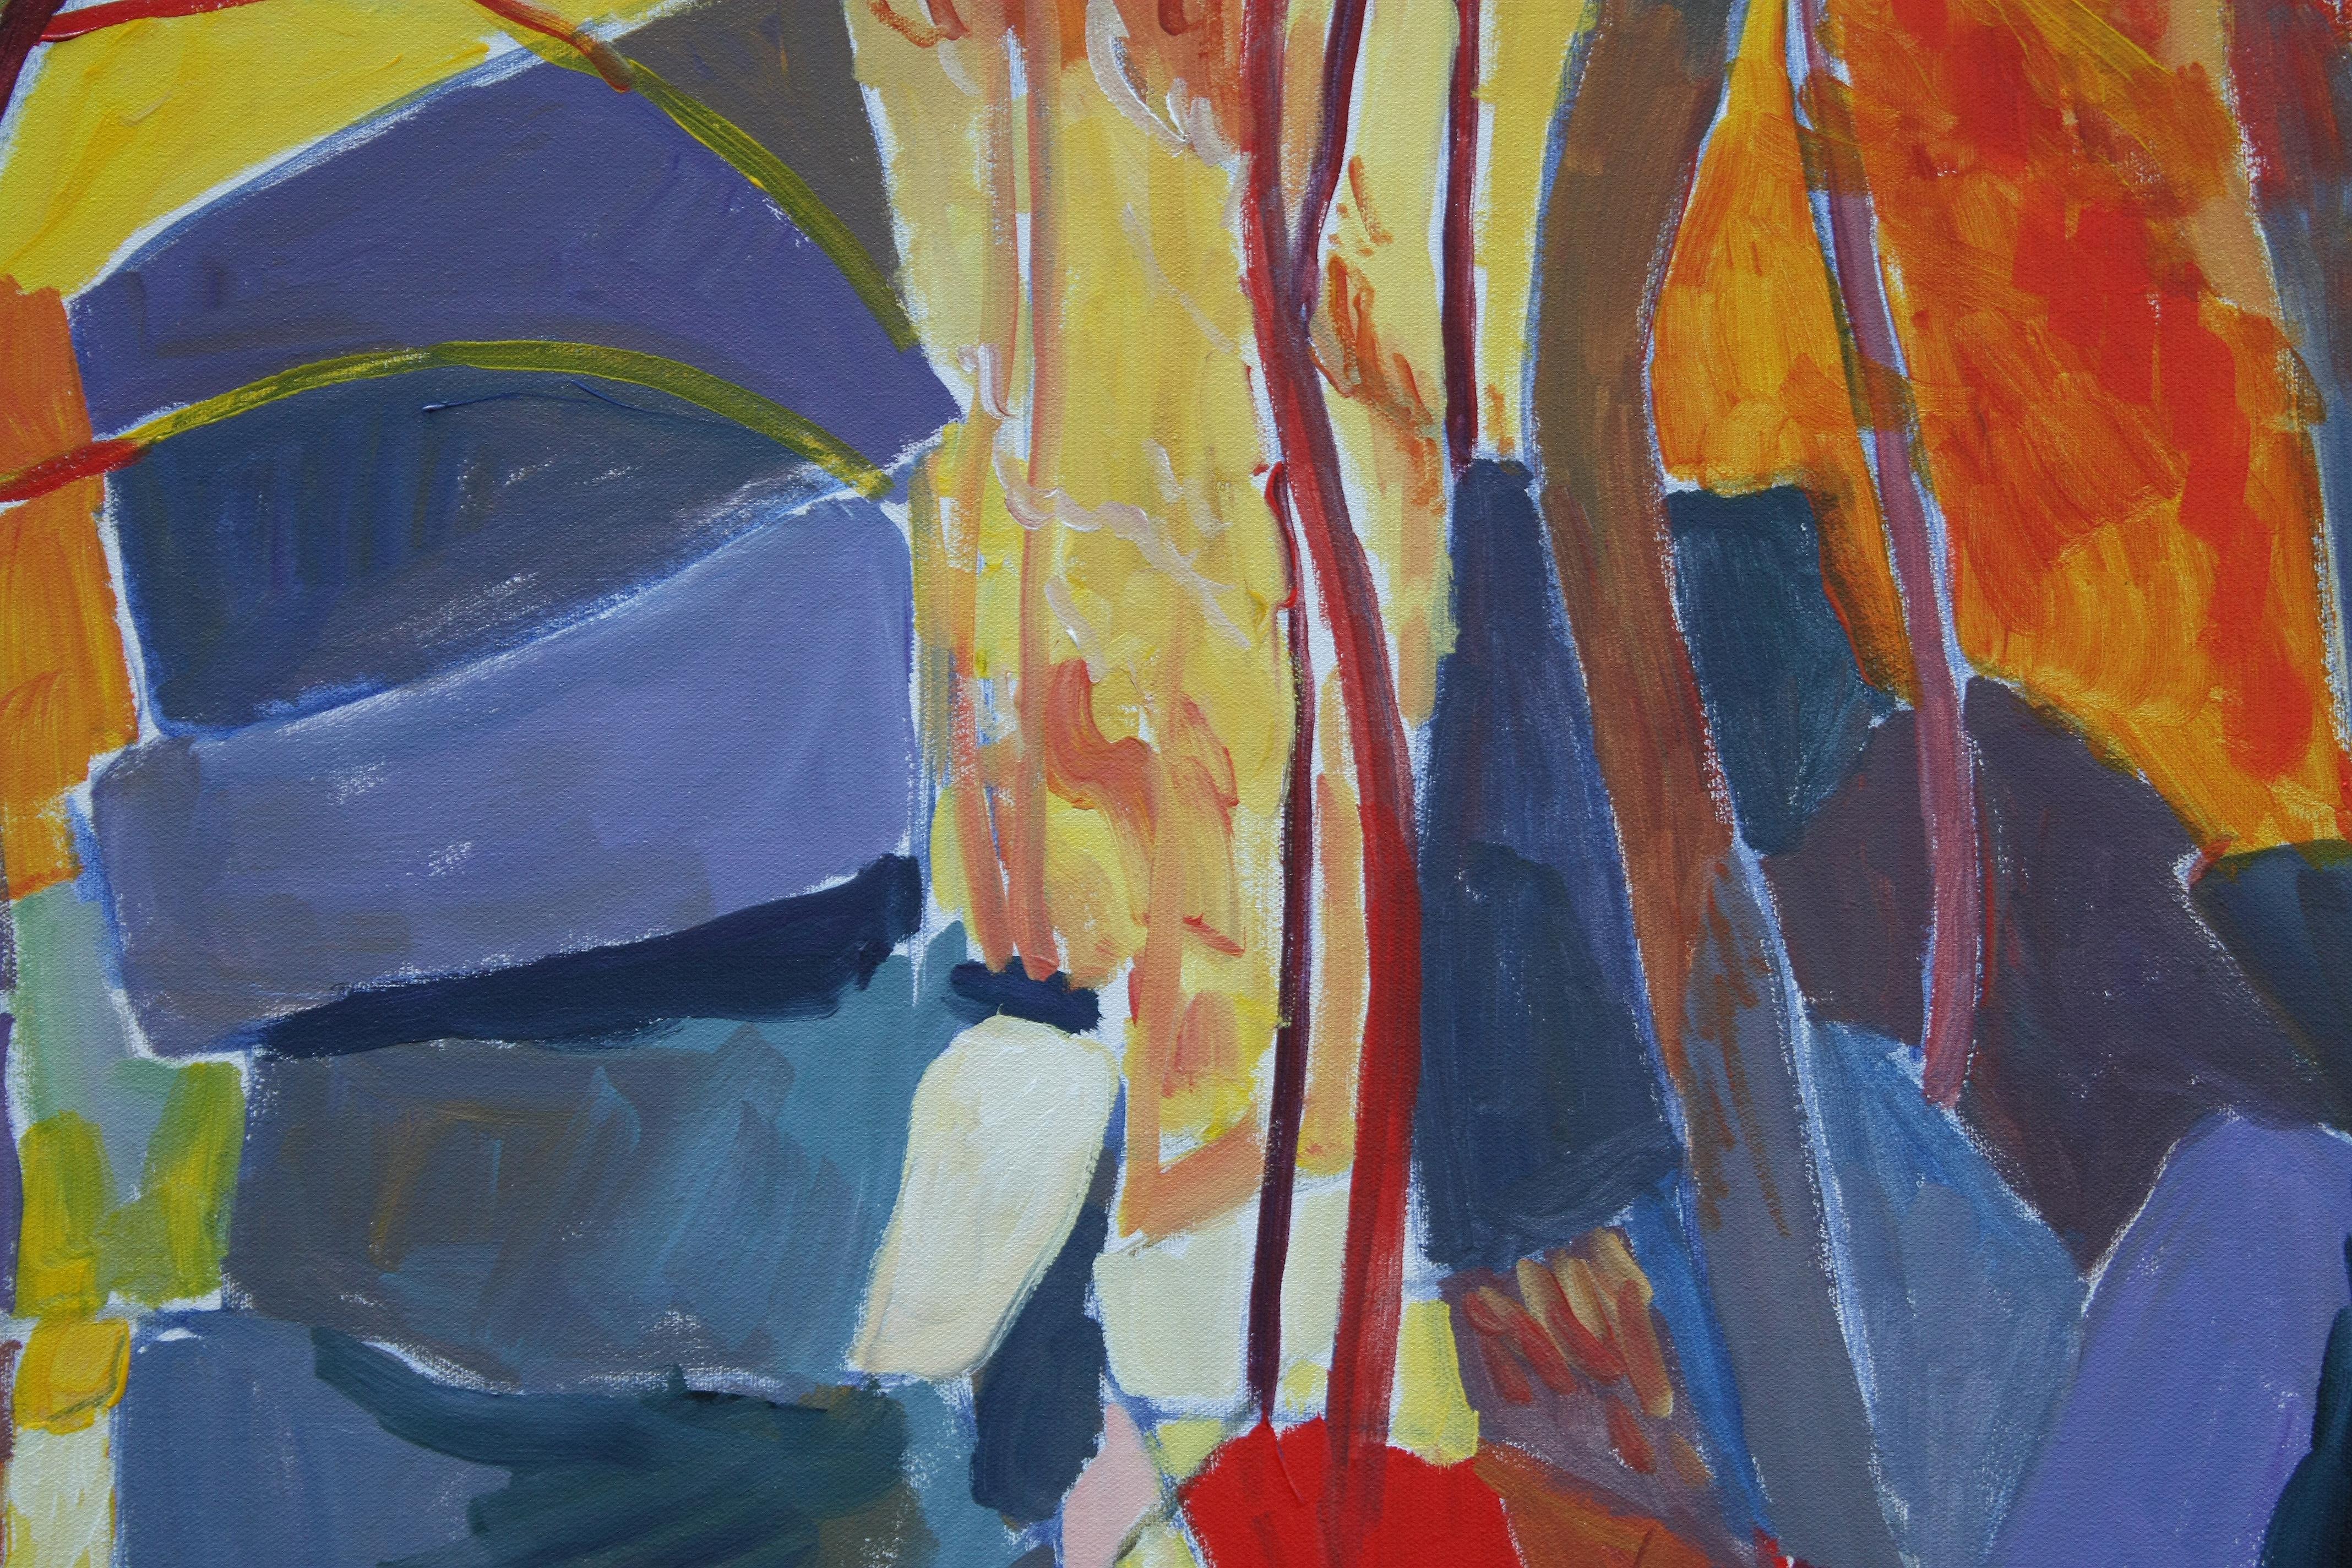 <p>Kommentare des Künstlers<br>Der Künstler Robert Hofherr präsentiert eine expressionistische Landschaft mit herbstlichen Wäldern. Beeinflusst von Matisse, setzt diese kühne und nachdrückliche Wiedergabe eines felsigen Herbstwaldes mit einer